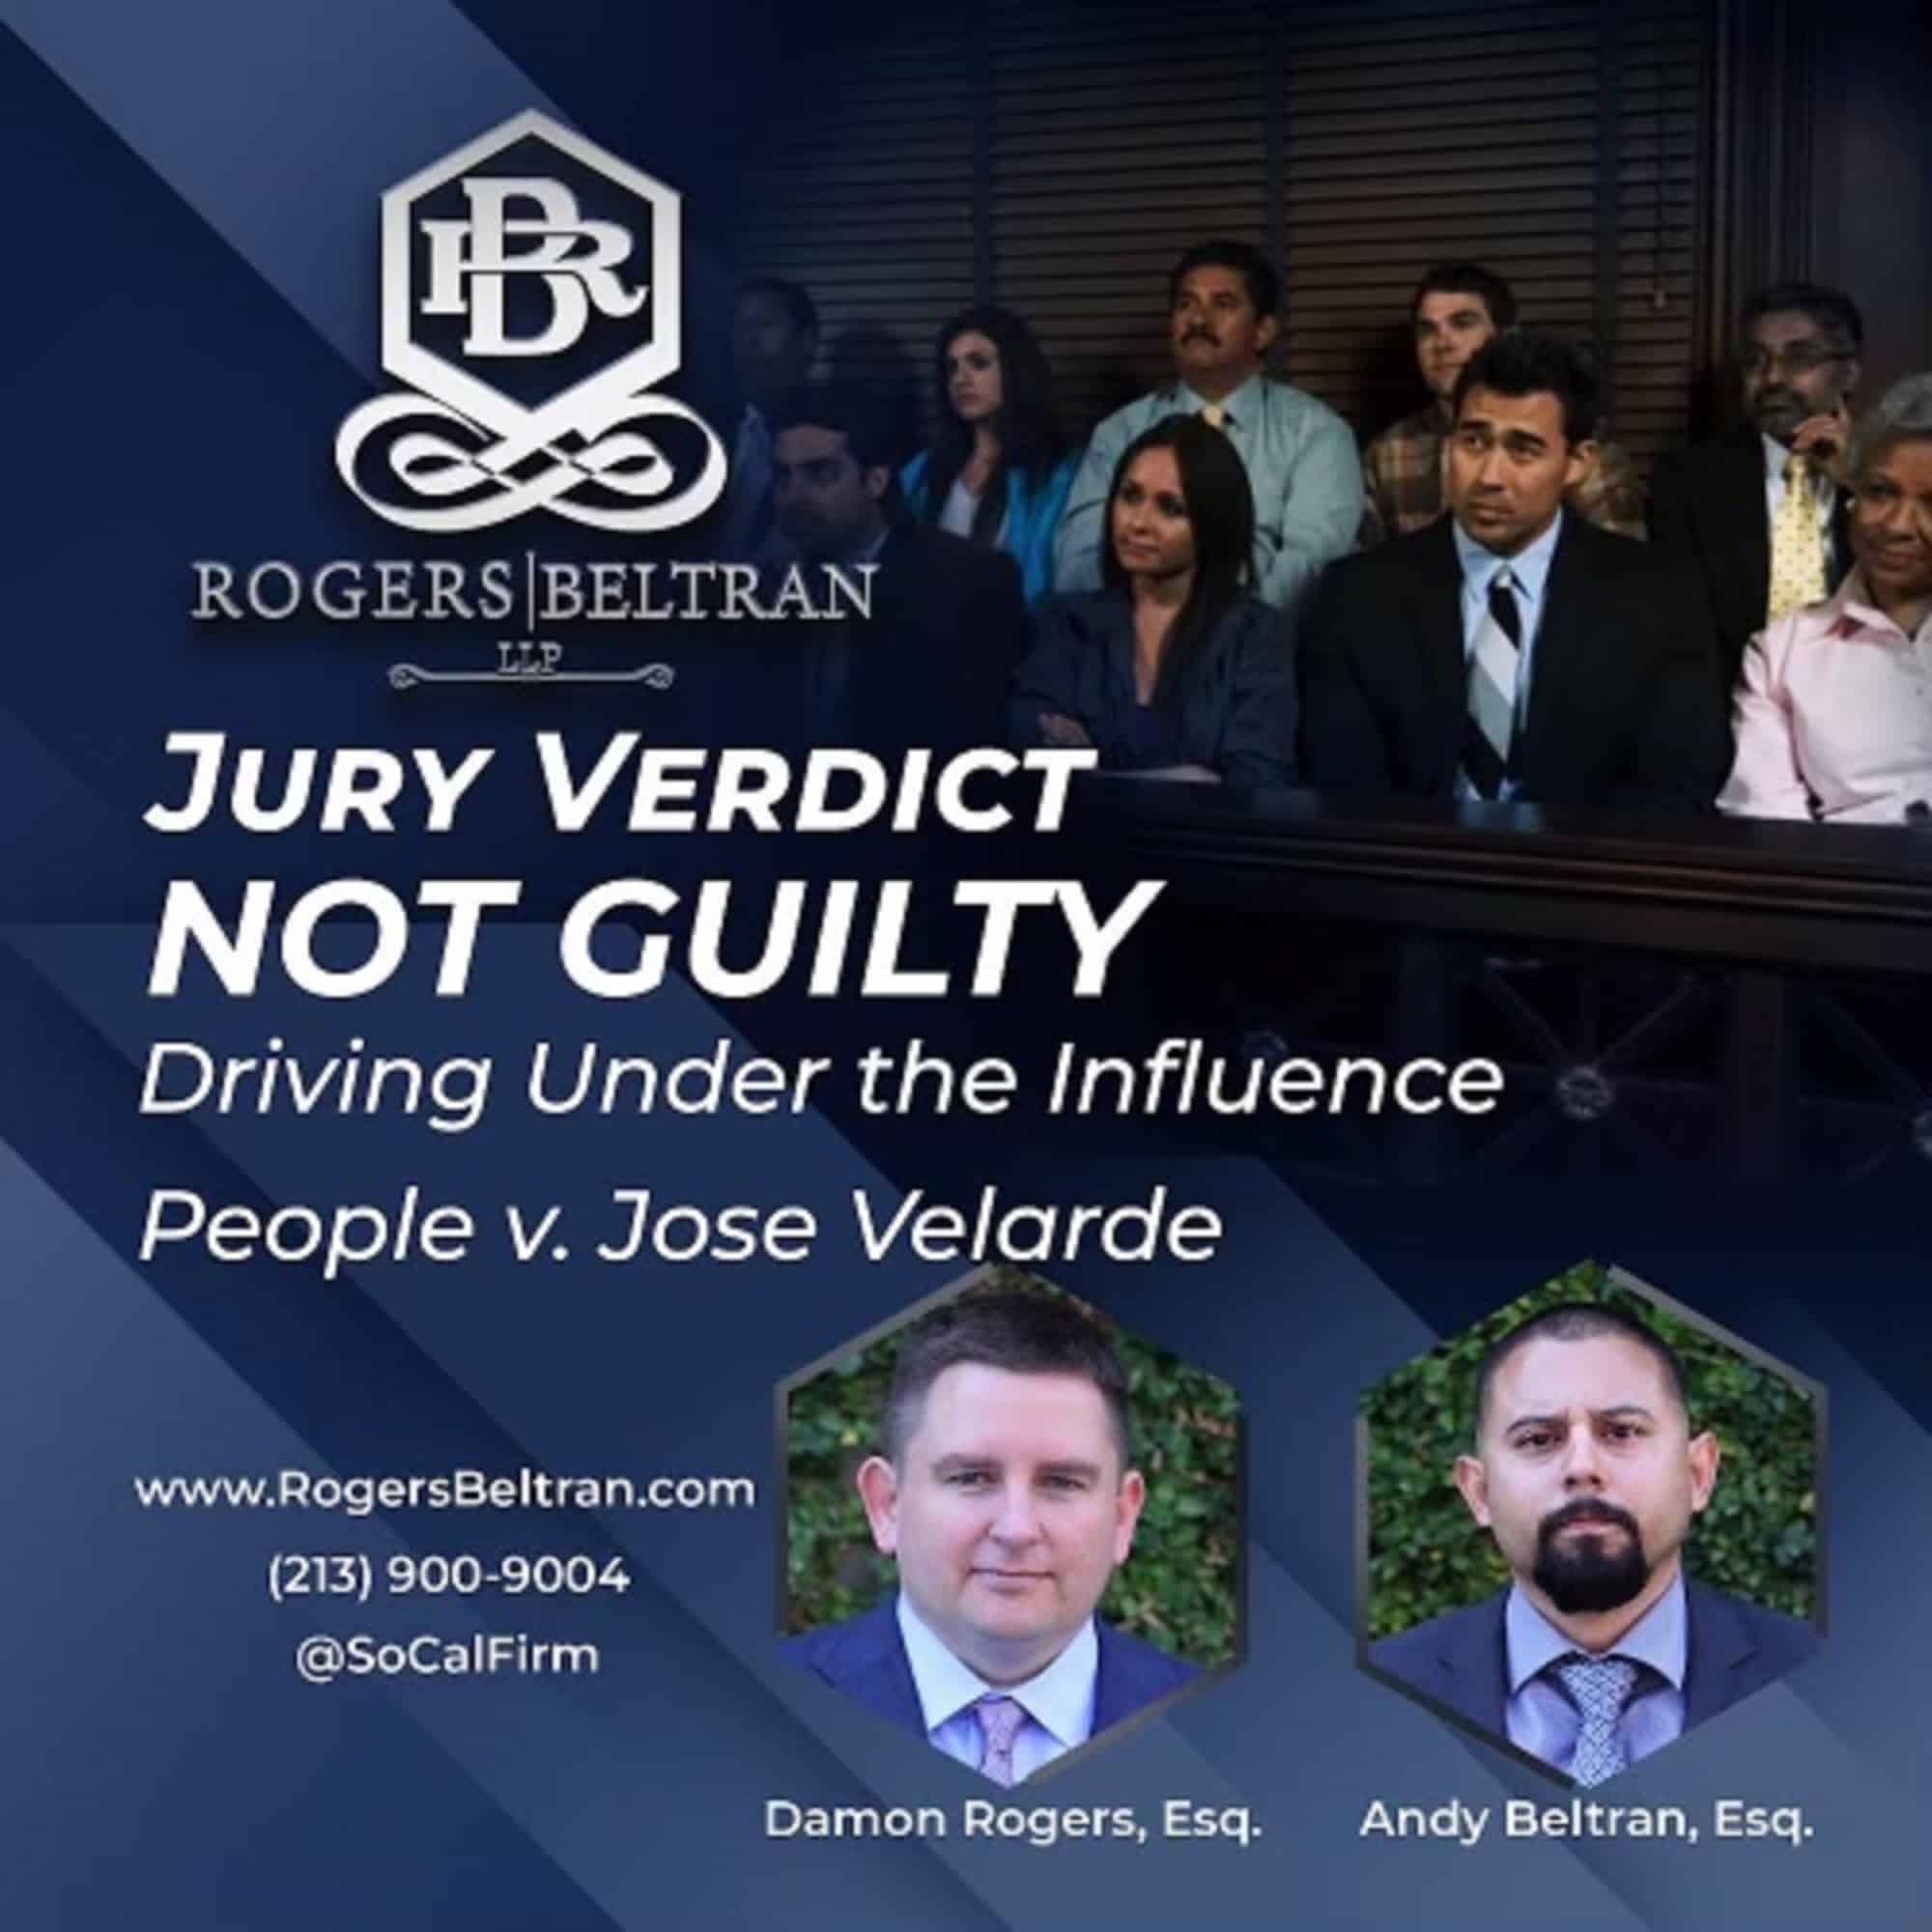 People v. Jose Velarde